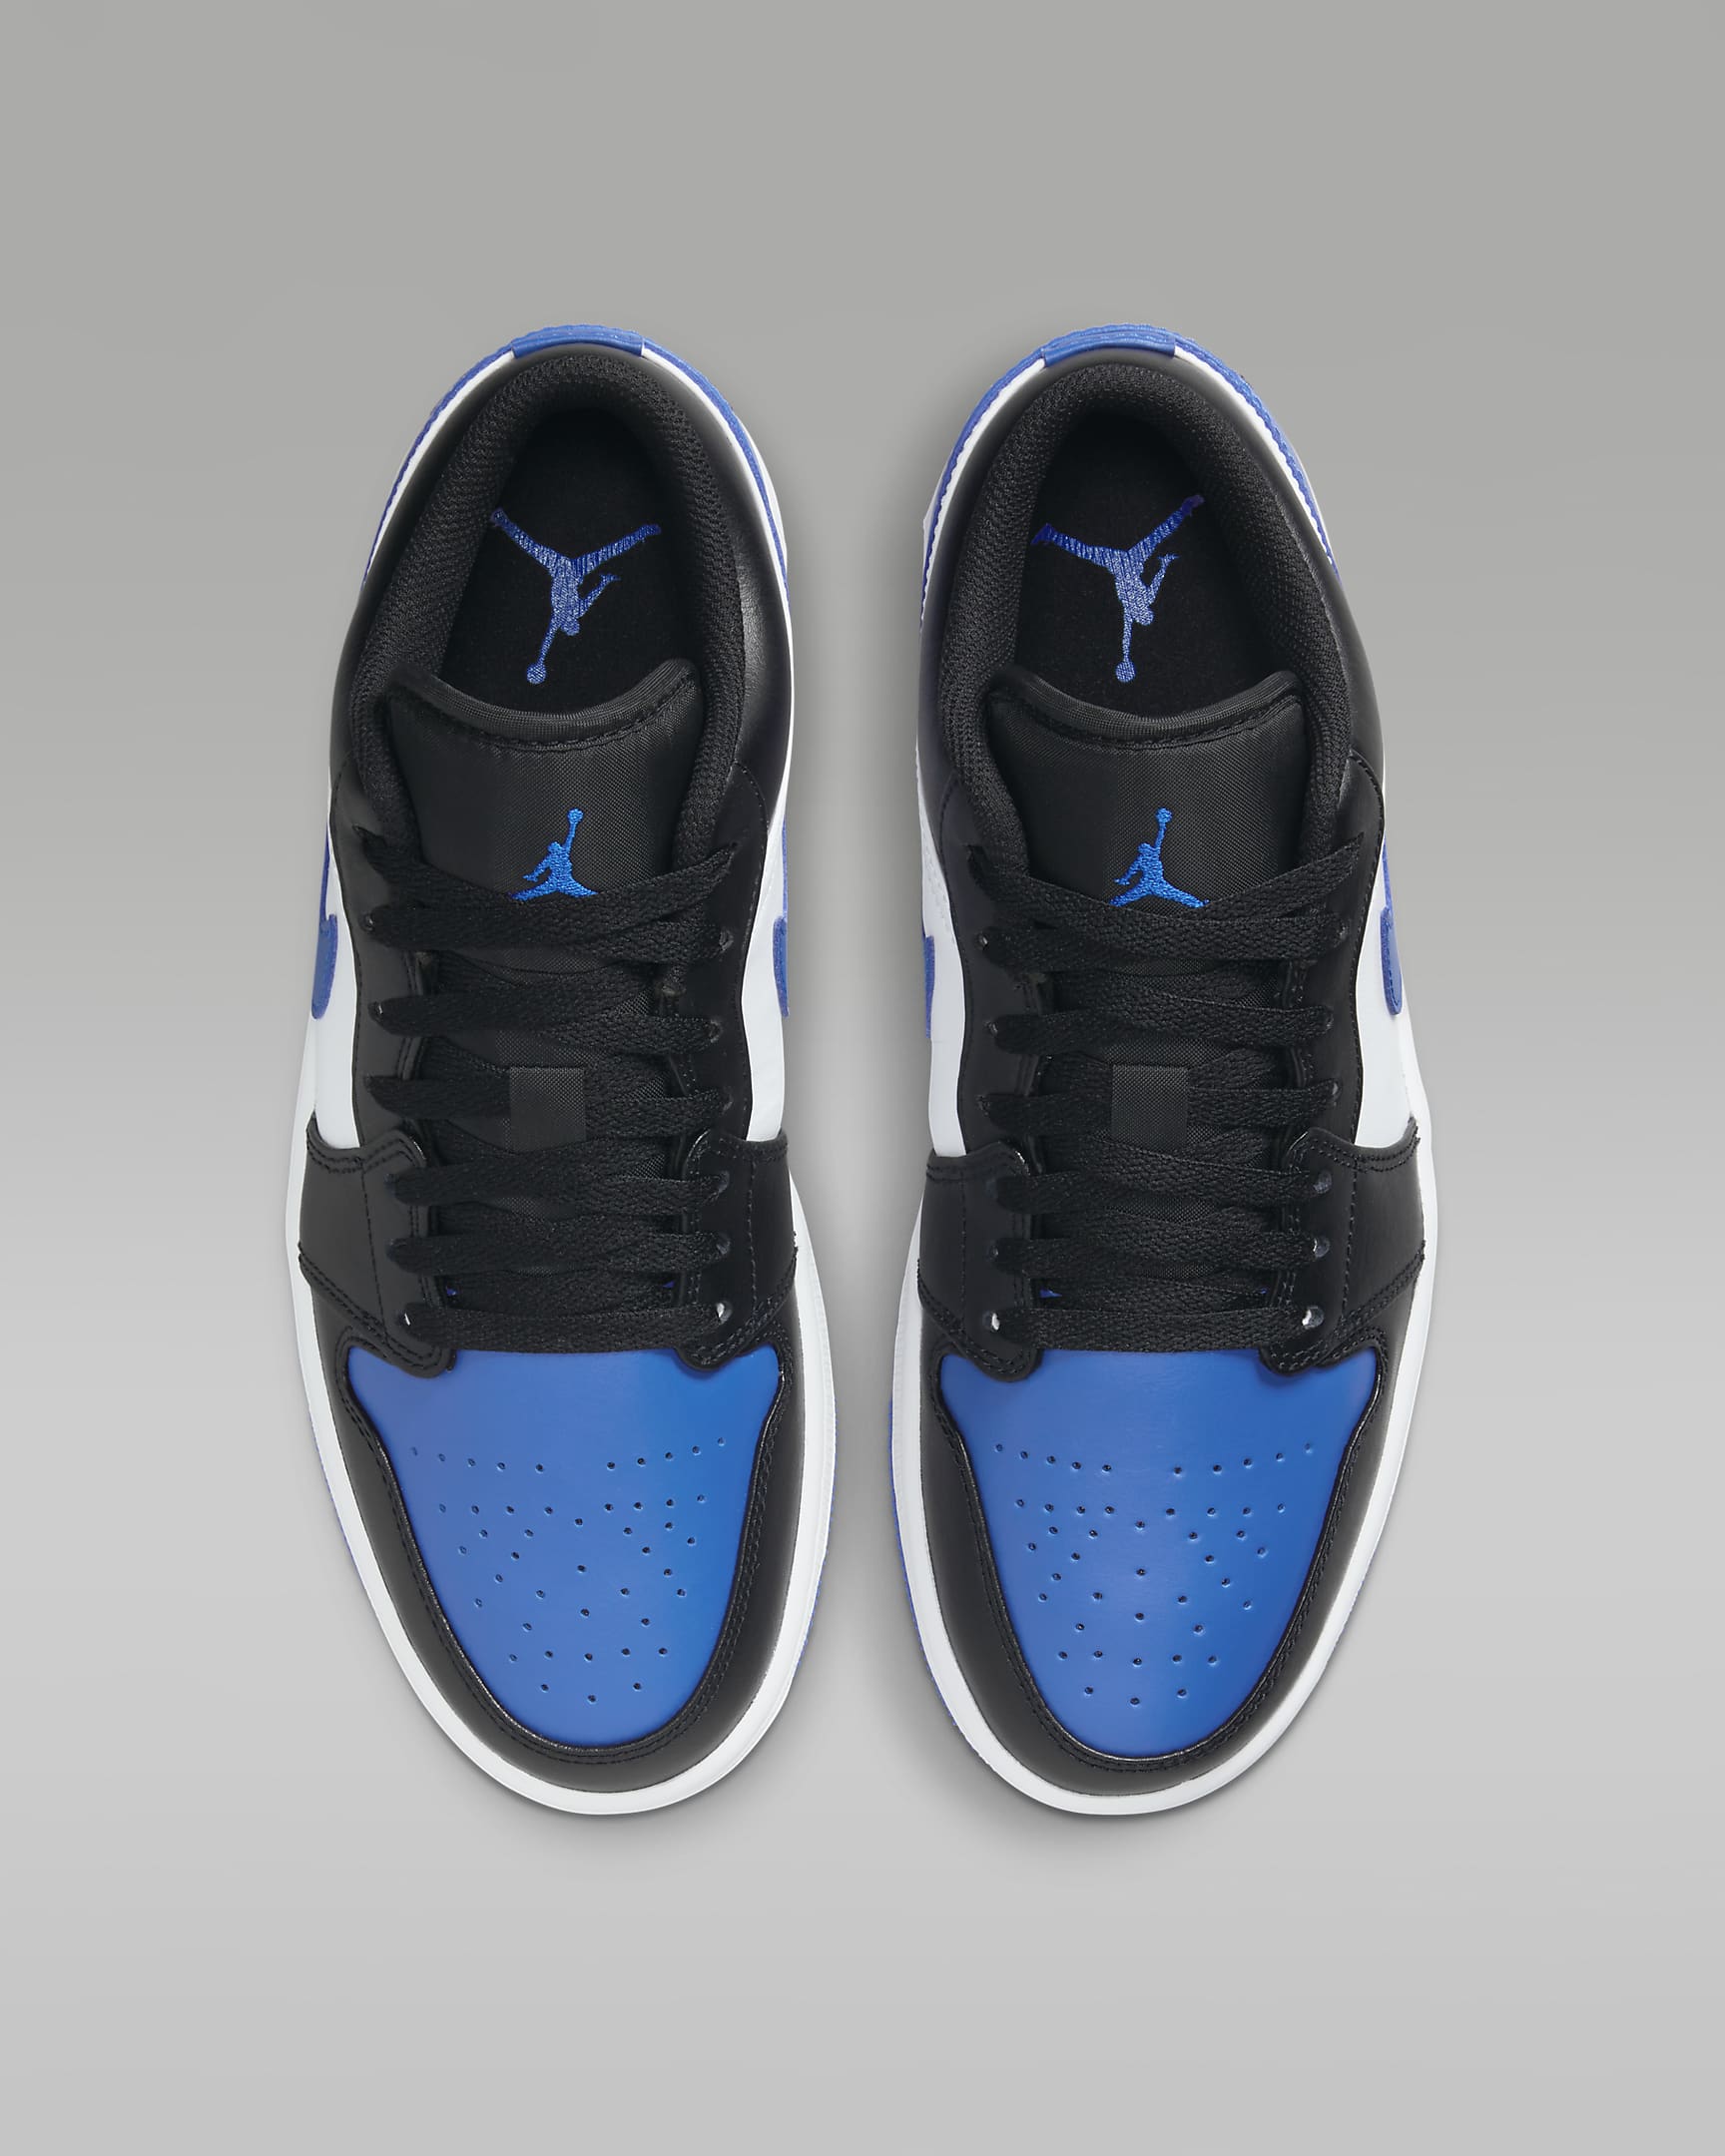 Air Jordan 1 Low Men's Shoes - White/Black/White/Royal Blue